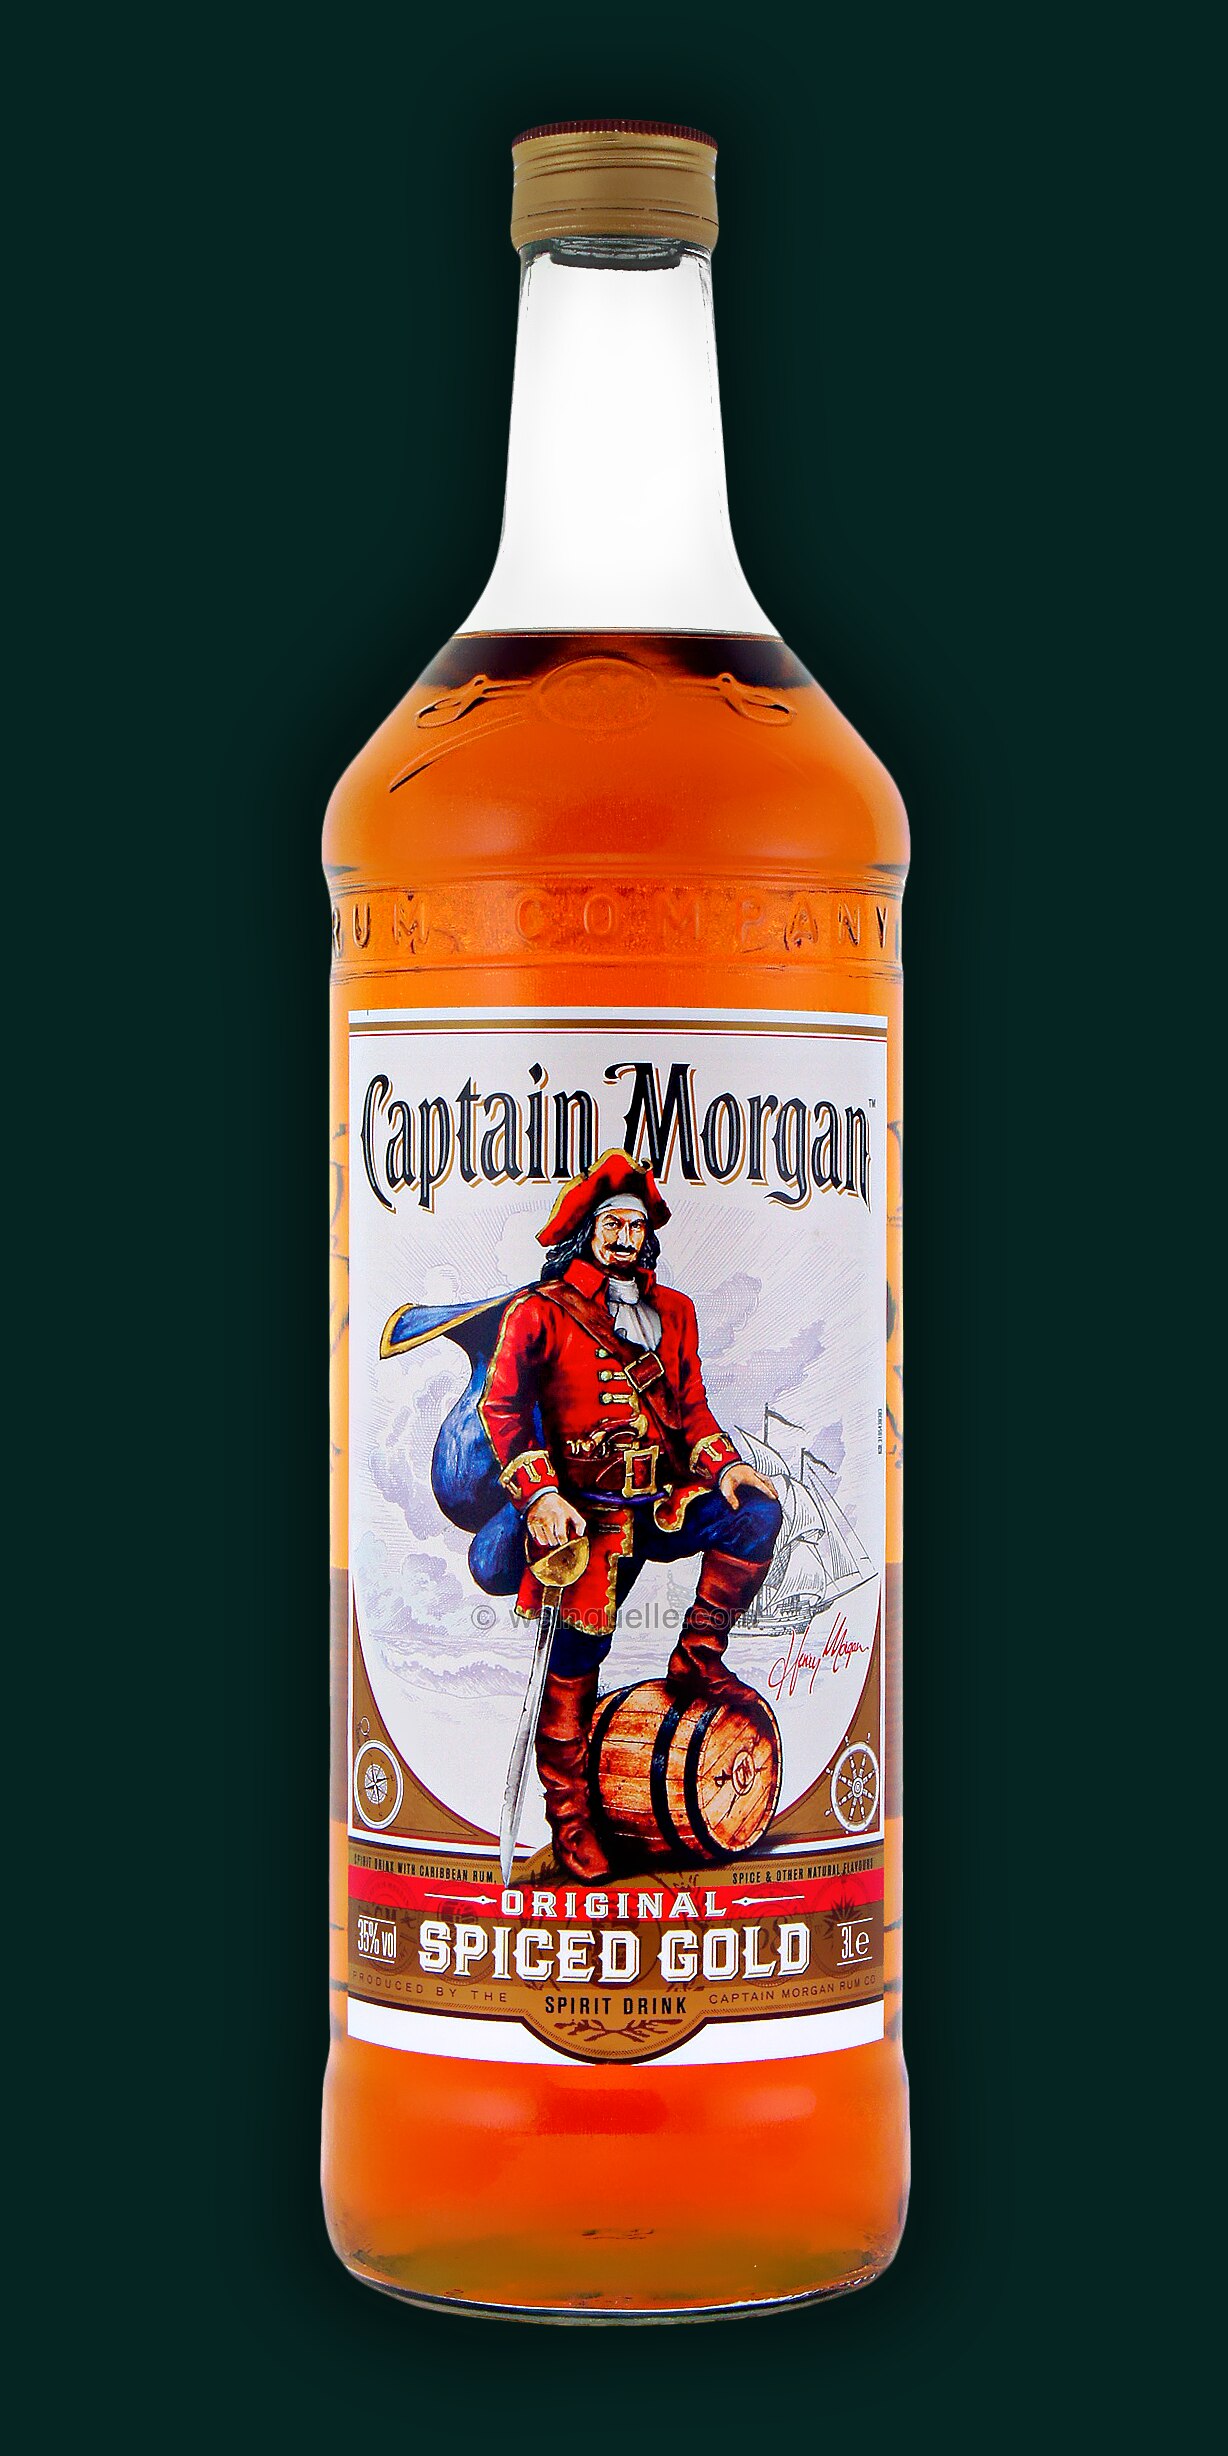 Morgan € Spiced Weinquelle - Captain 3,0 Lühmann Liter, 60,95 Gold